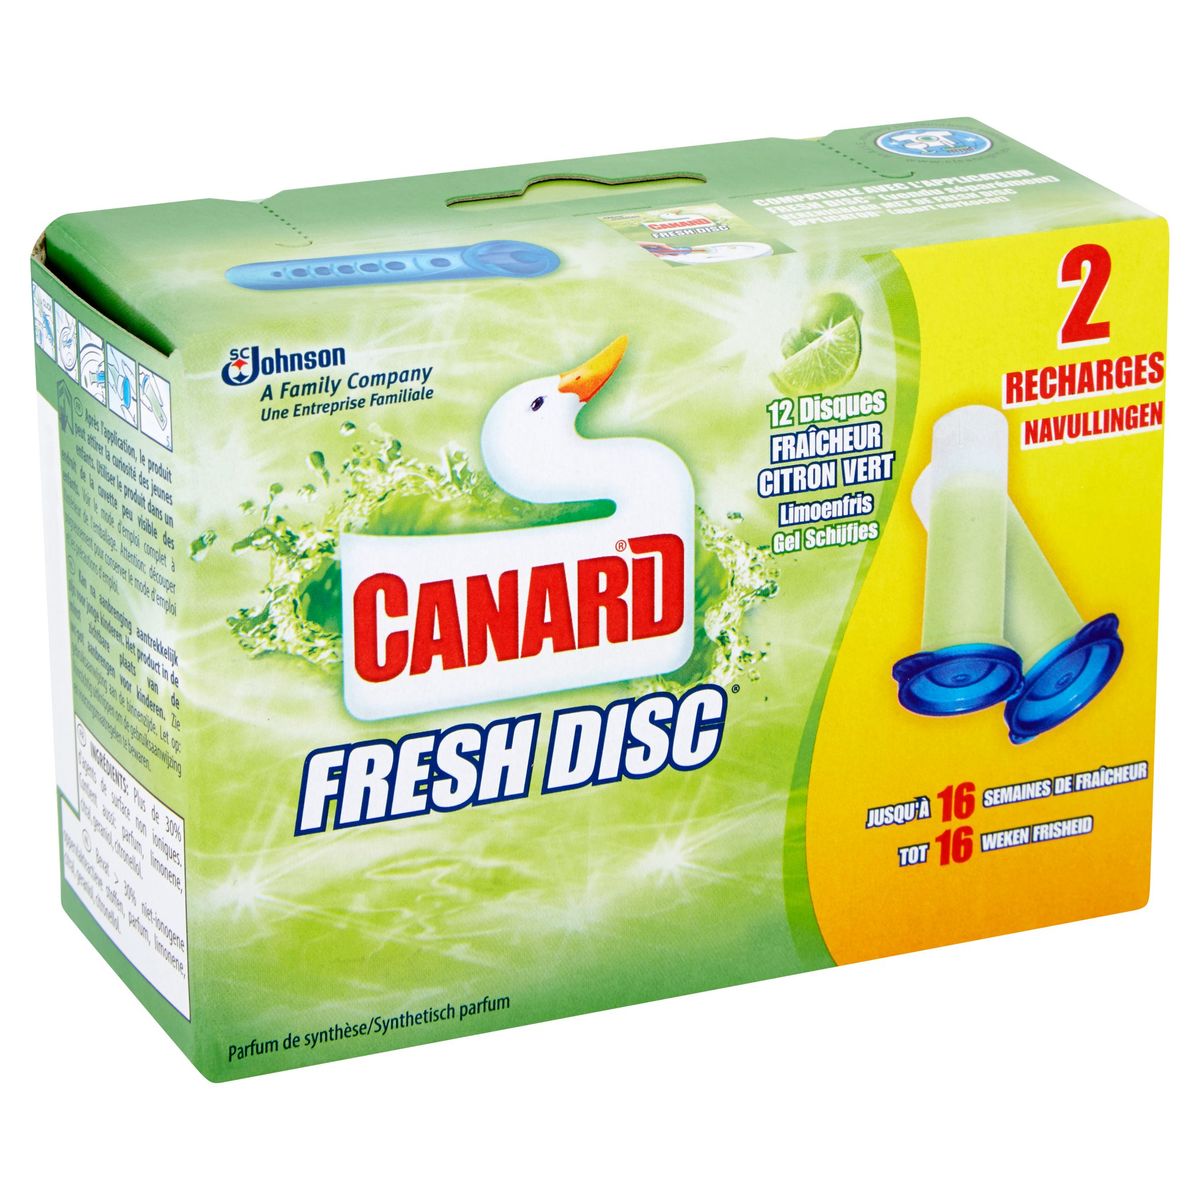 Canard Fresh Disc - Fraîcheur Citron Vert - Recharges